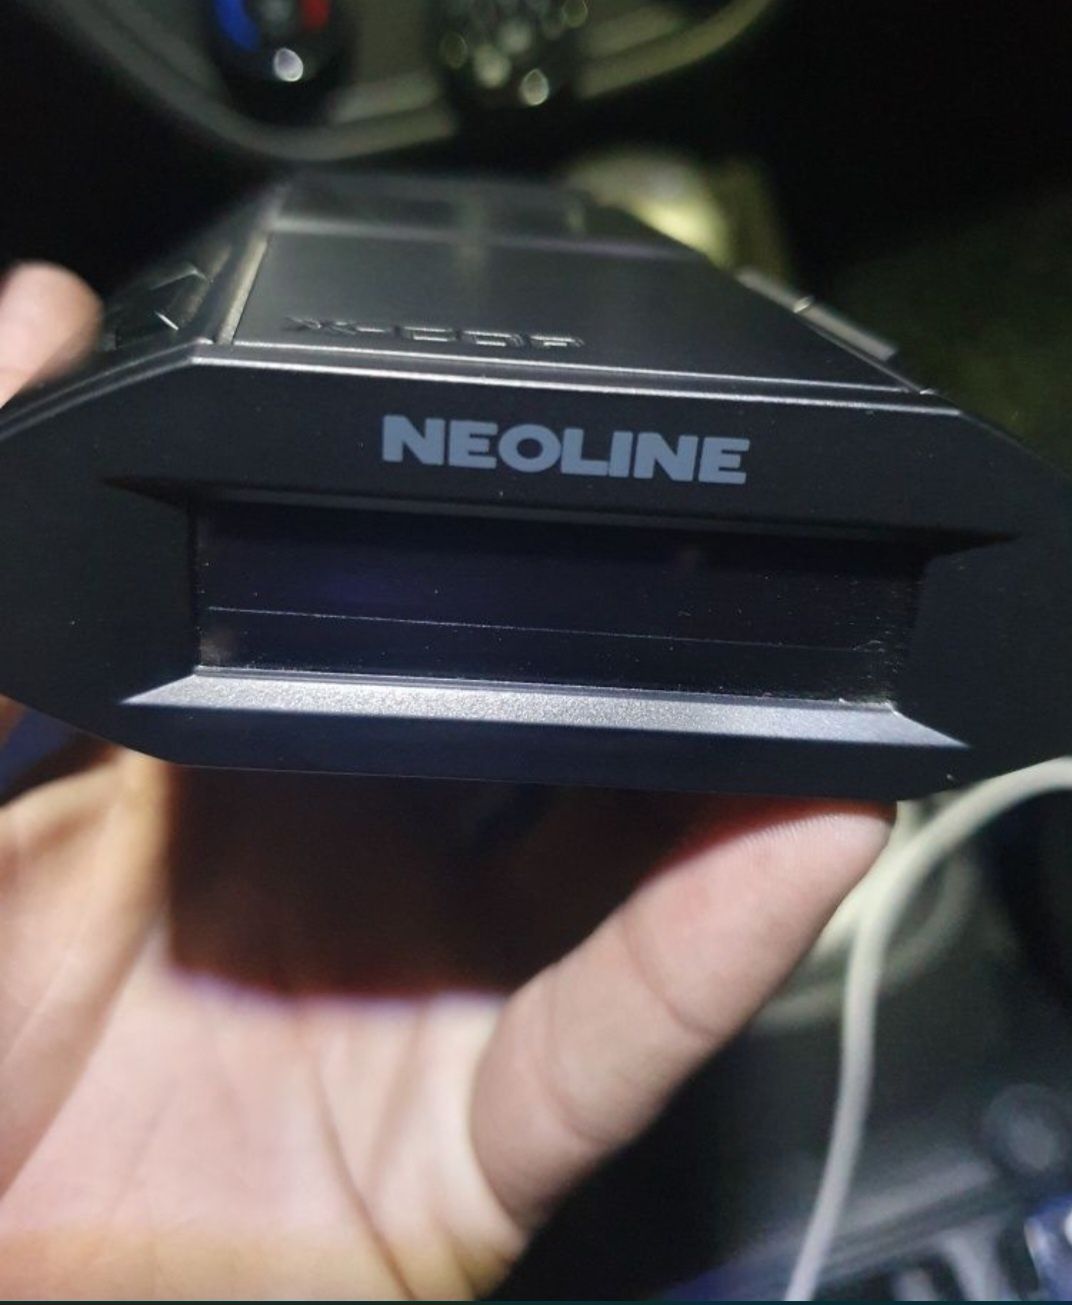 Продам Neoline 7700s идеалном состояни.работает отлично прошивка новая